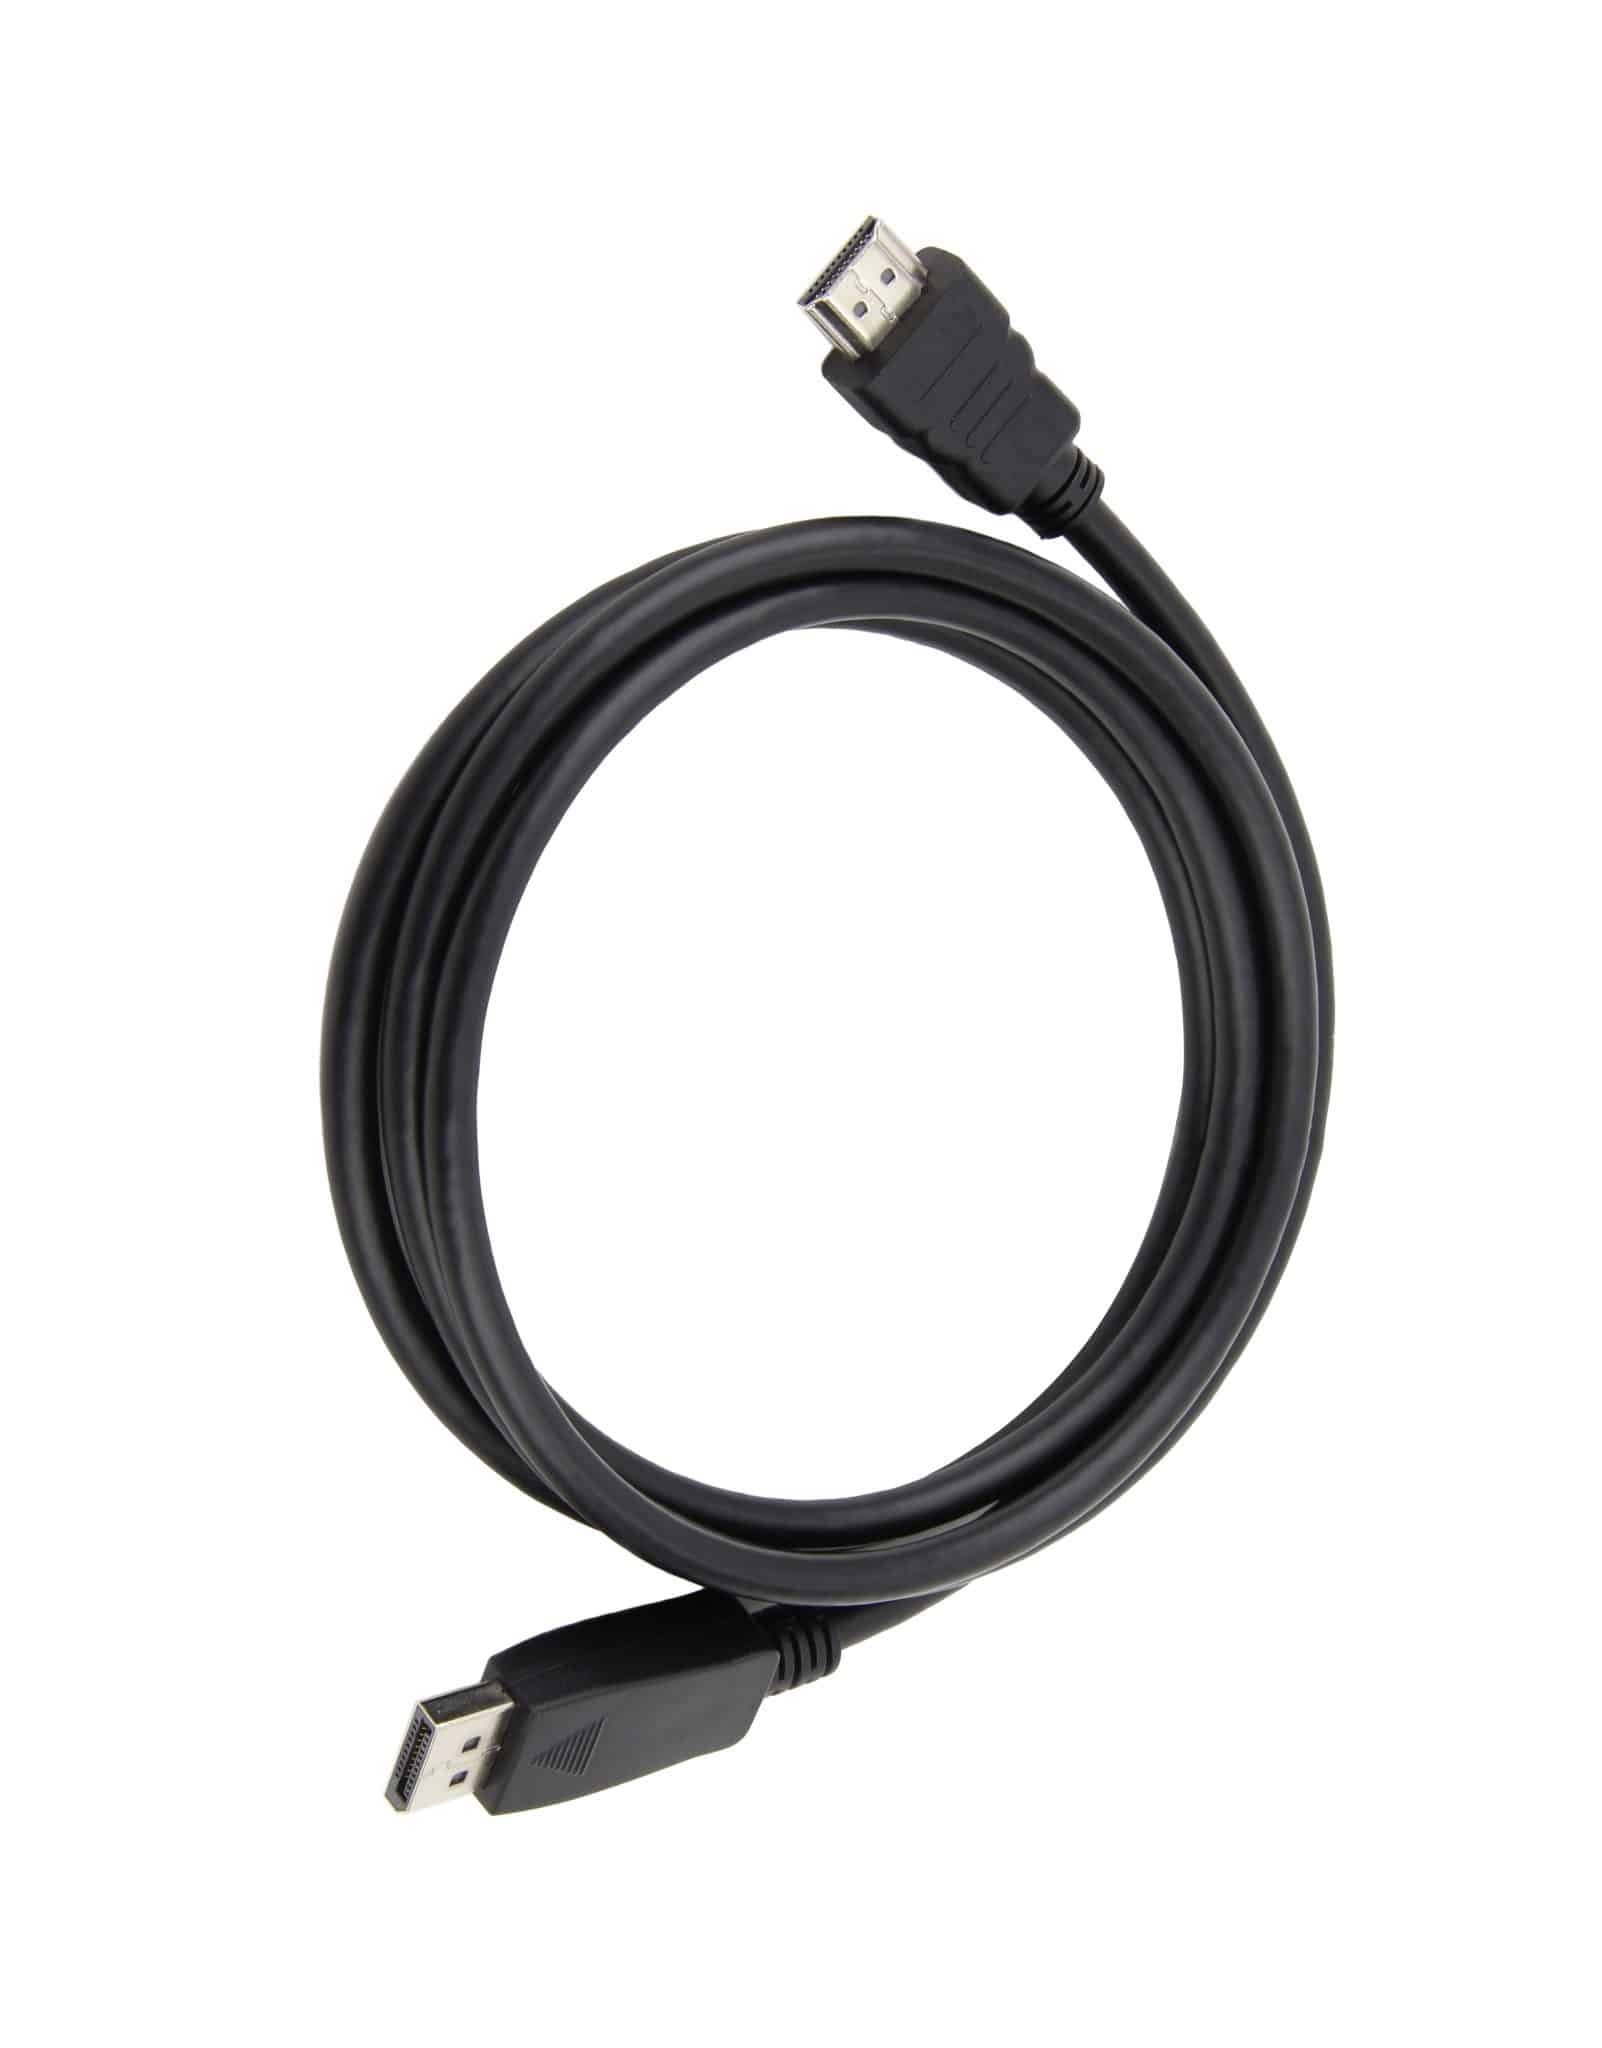 comment choisir le bon adaptateur HDMI pour connecter vos appareils à votre téléviseur